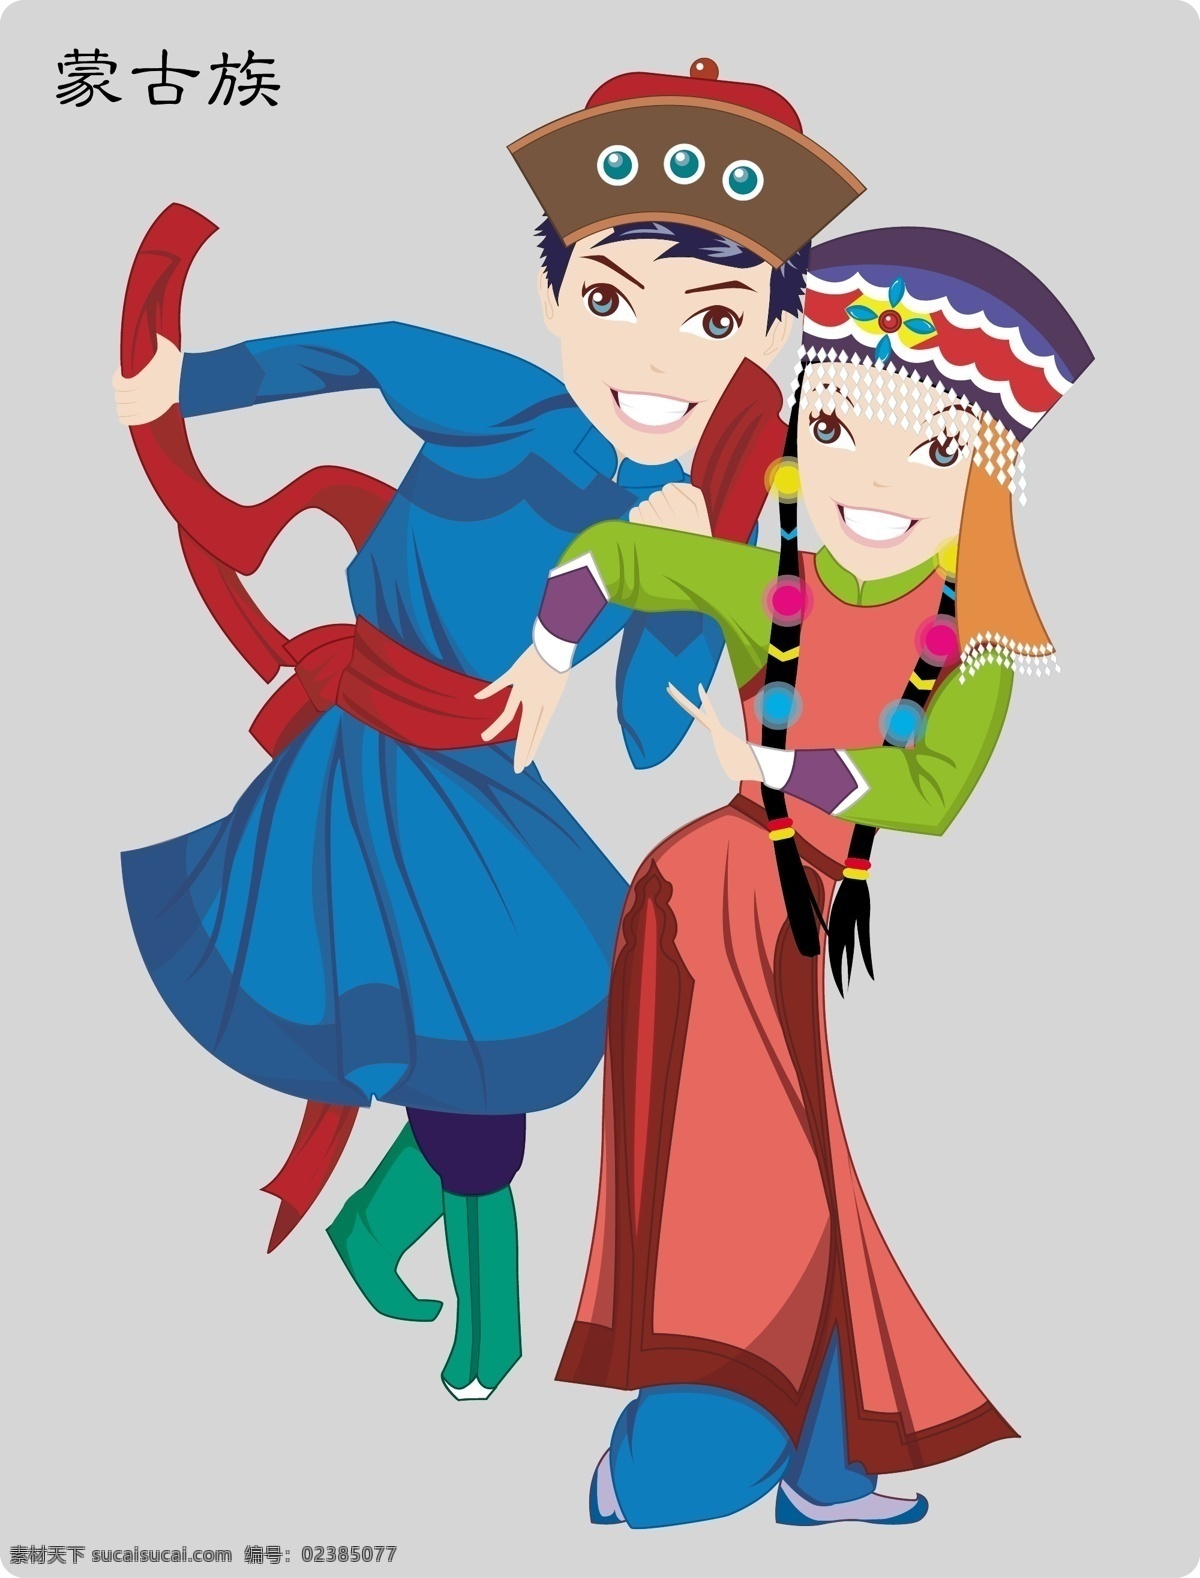 蒙古族舞蹈 少数民族 舞蹈 人物 卡通 服装 中国 地方 活泼